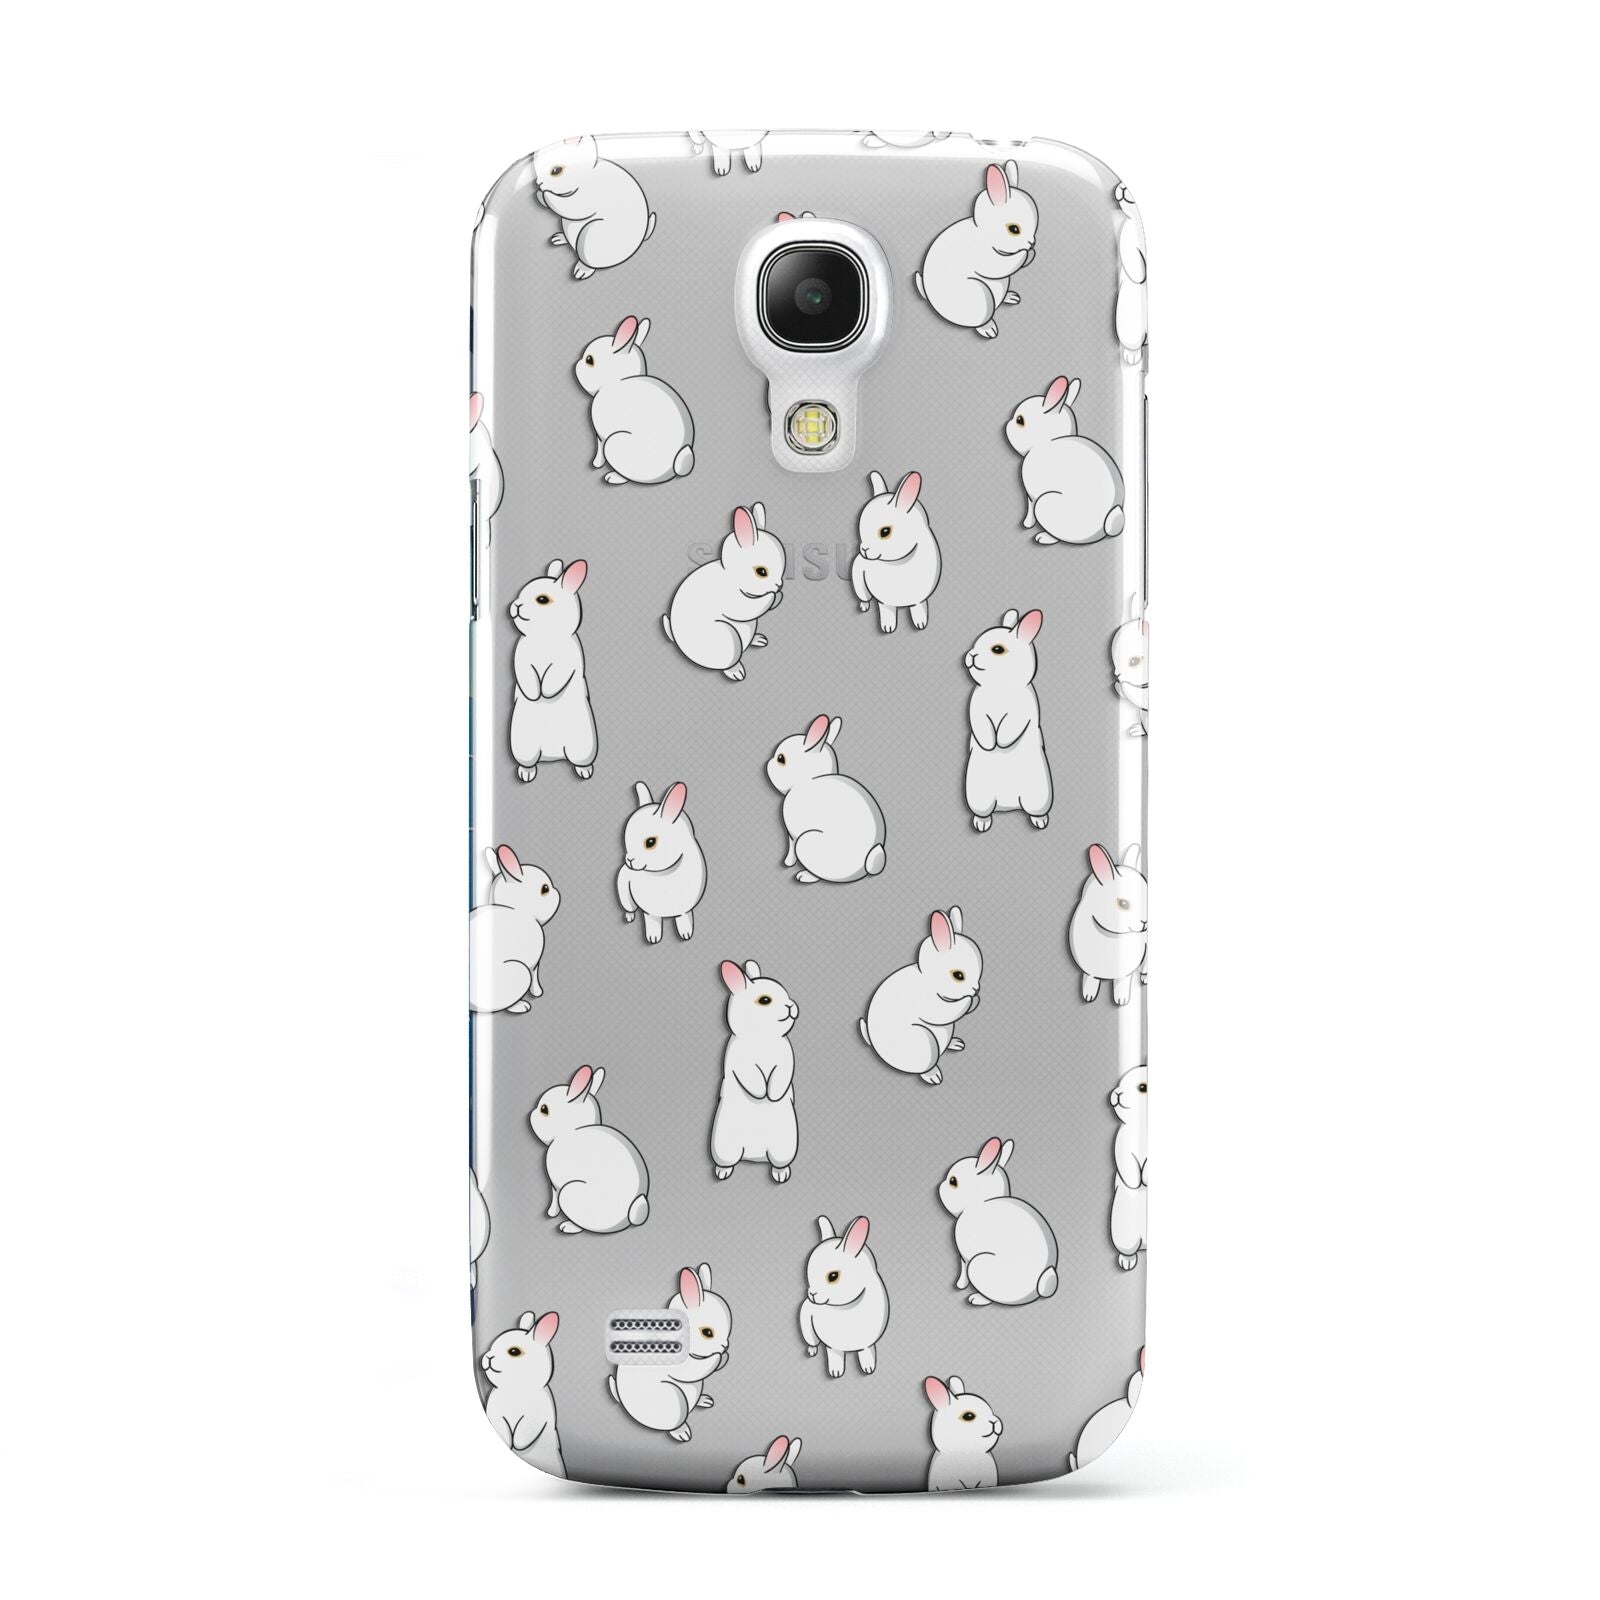 Bunny Rabbit Samsung Galaxy S4 Mini Case